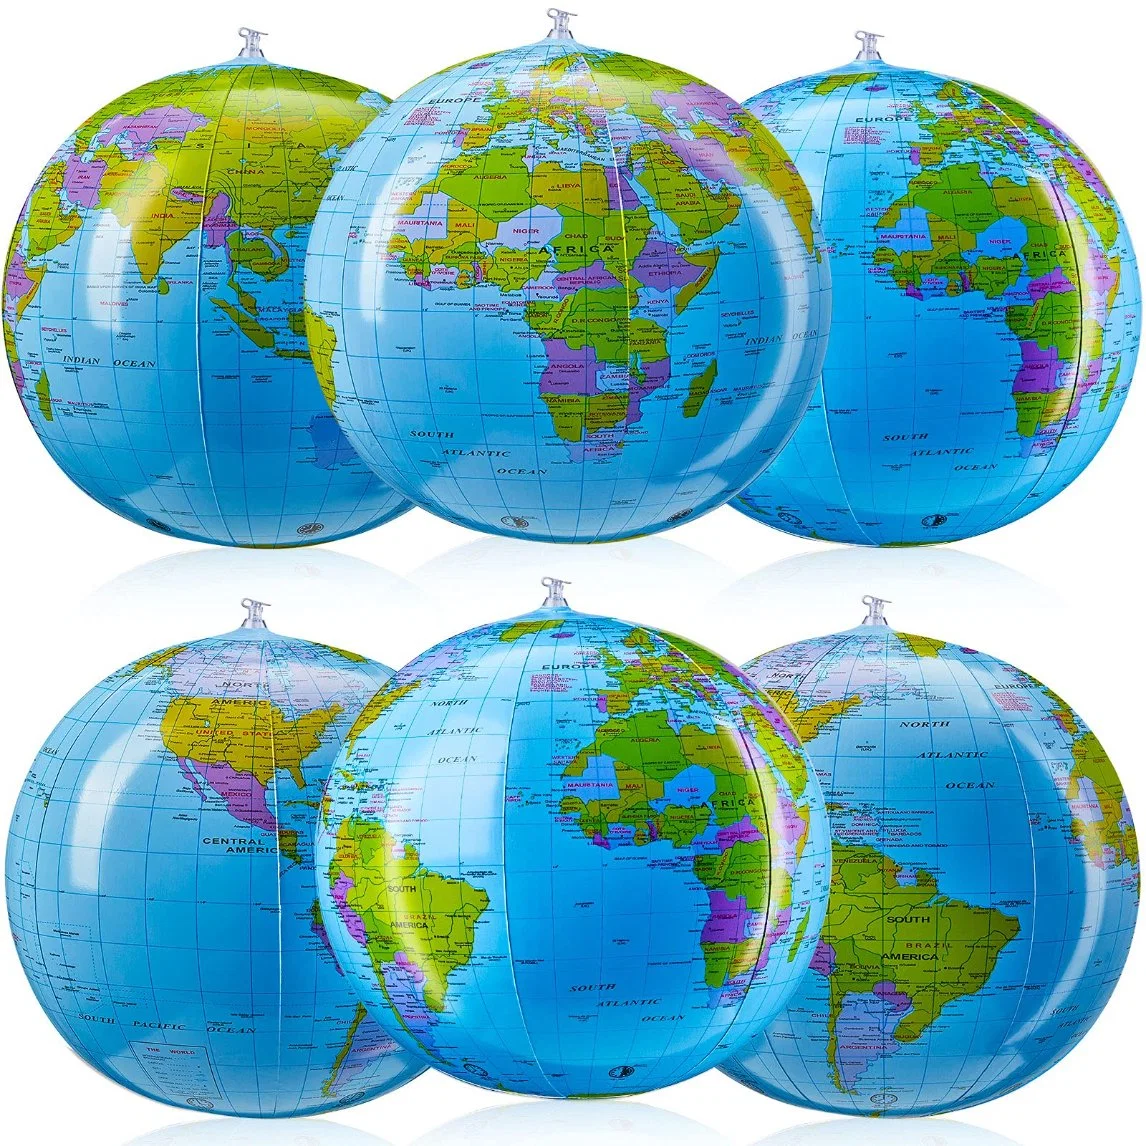 الكرة الأرضية بيتش تنفجر صورة الكرة الأرضية القابلة للنفخ في العالم خريطة جلوب بي سي العملاقة لعبة قابلة للنفخ للفصل الدراسي للأطفال إمدادات طرف الجغرافيا